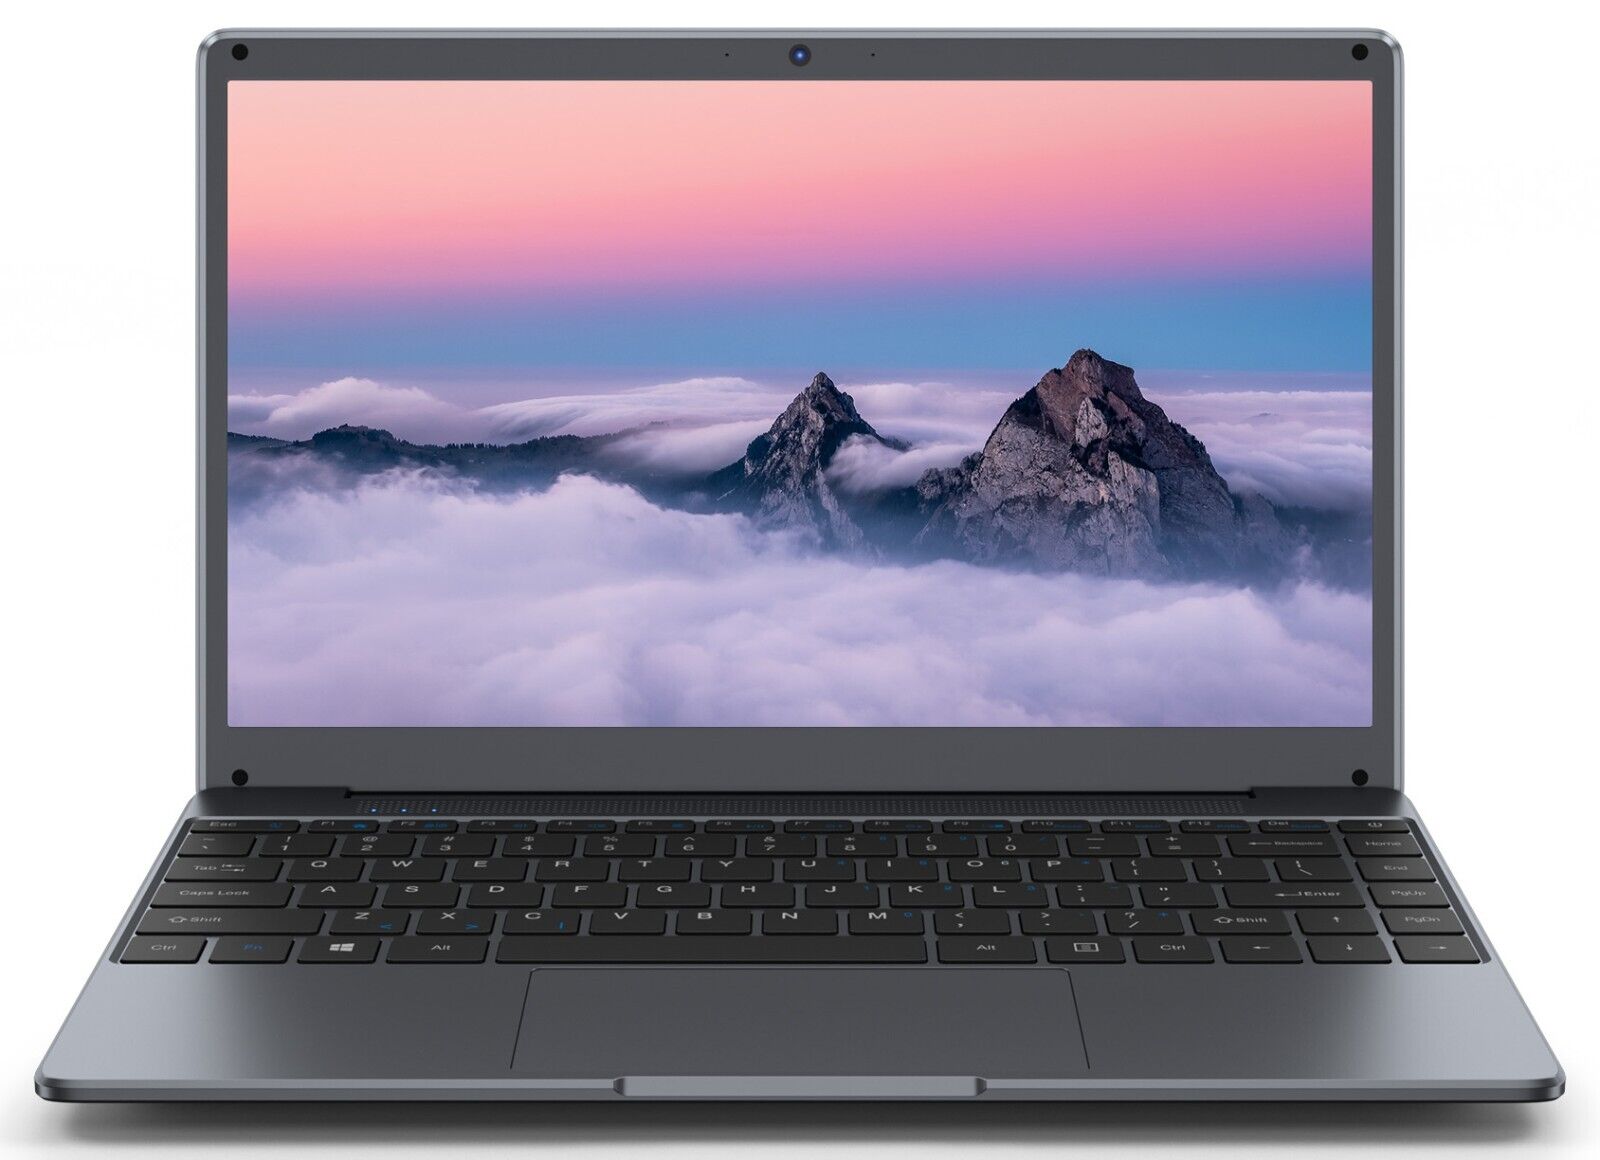 SGIN Laptop Notebook 15.6 inch FHD Intel Celeron N4020 2.5GHz 4GB RAM 128GB ROM